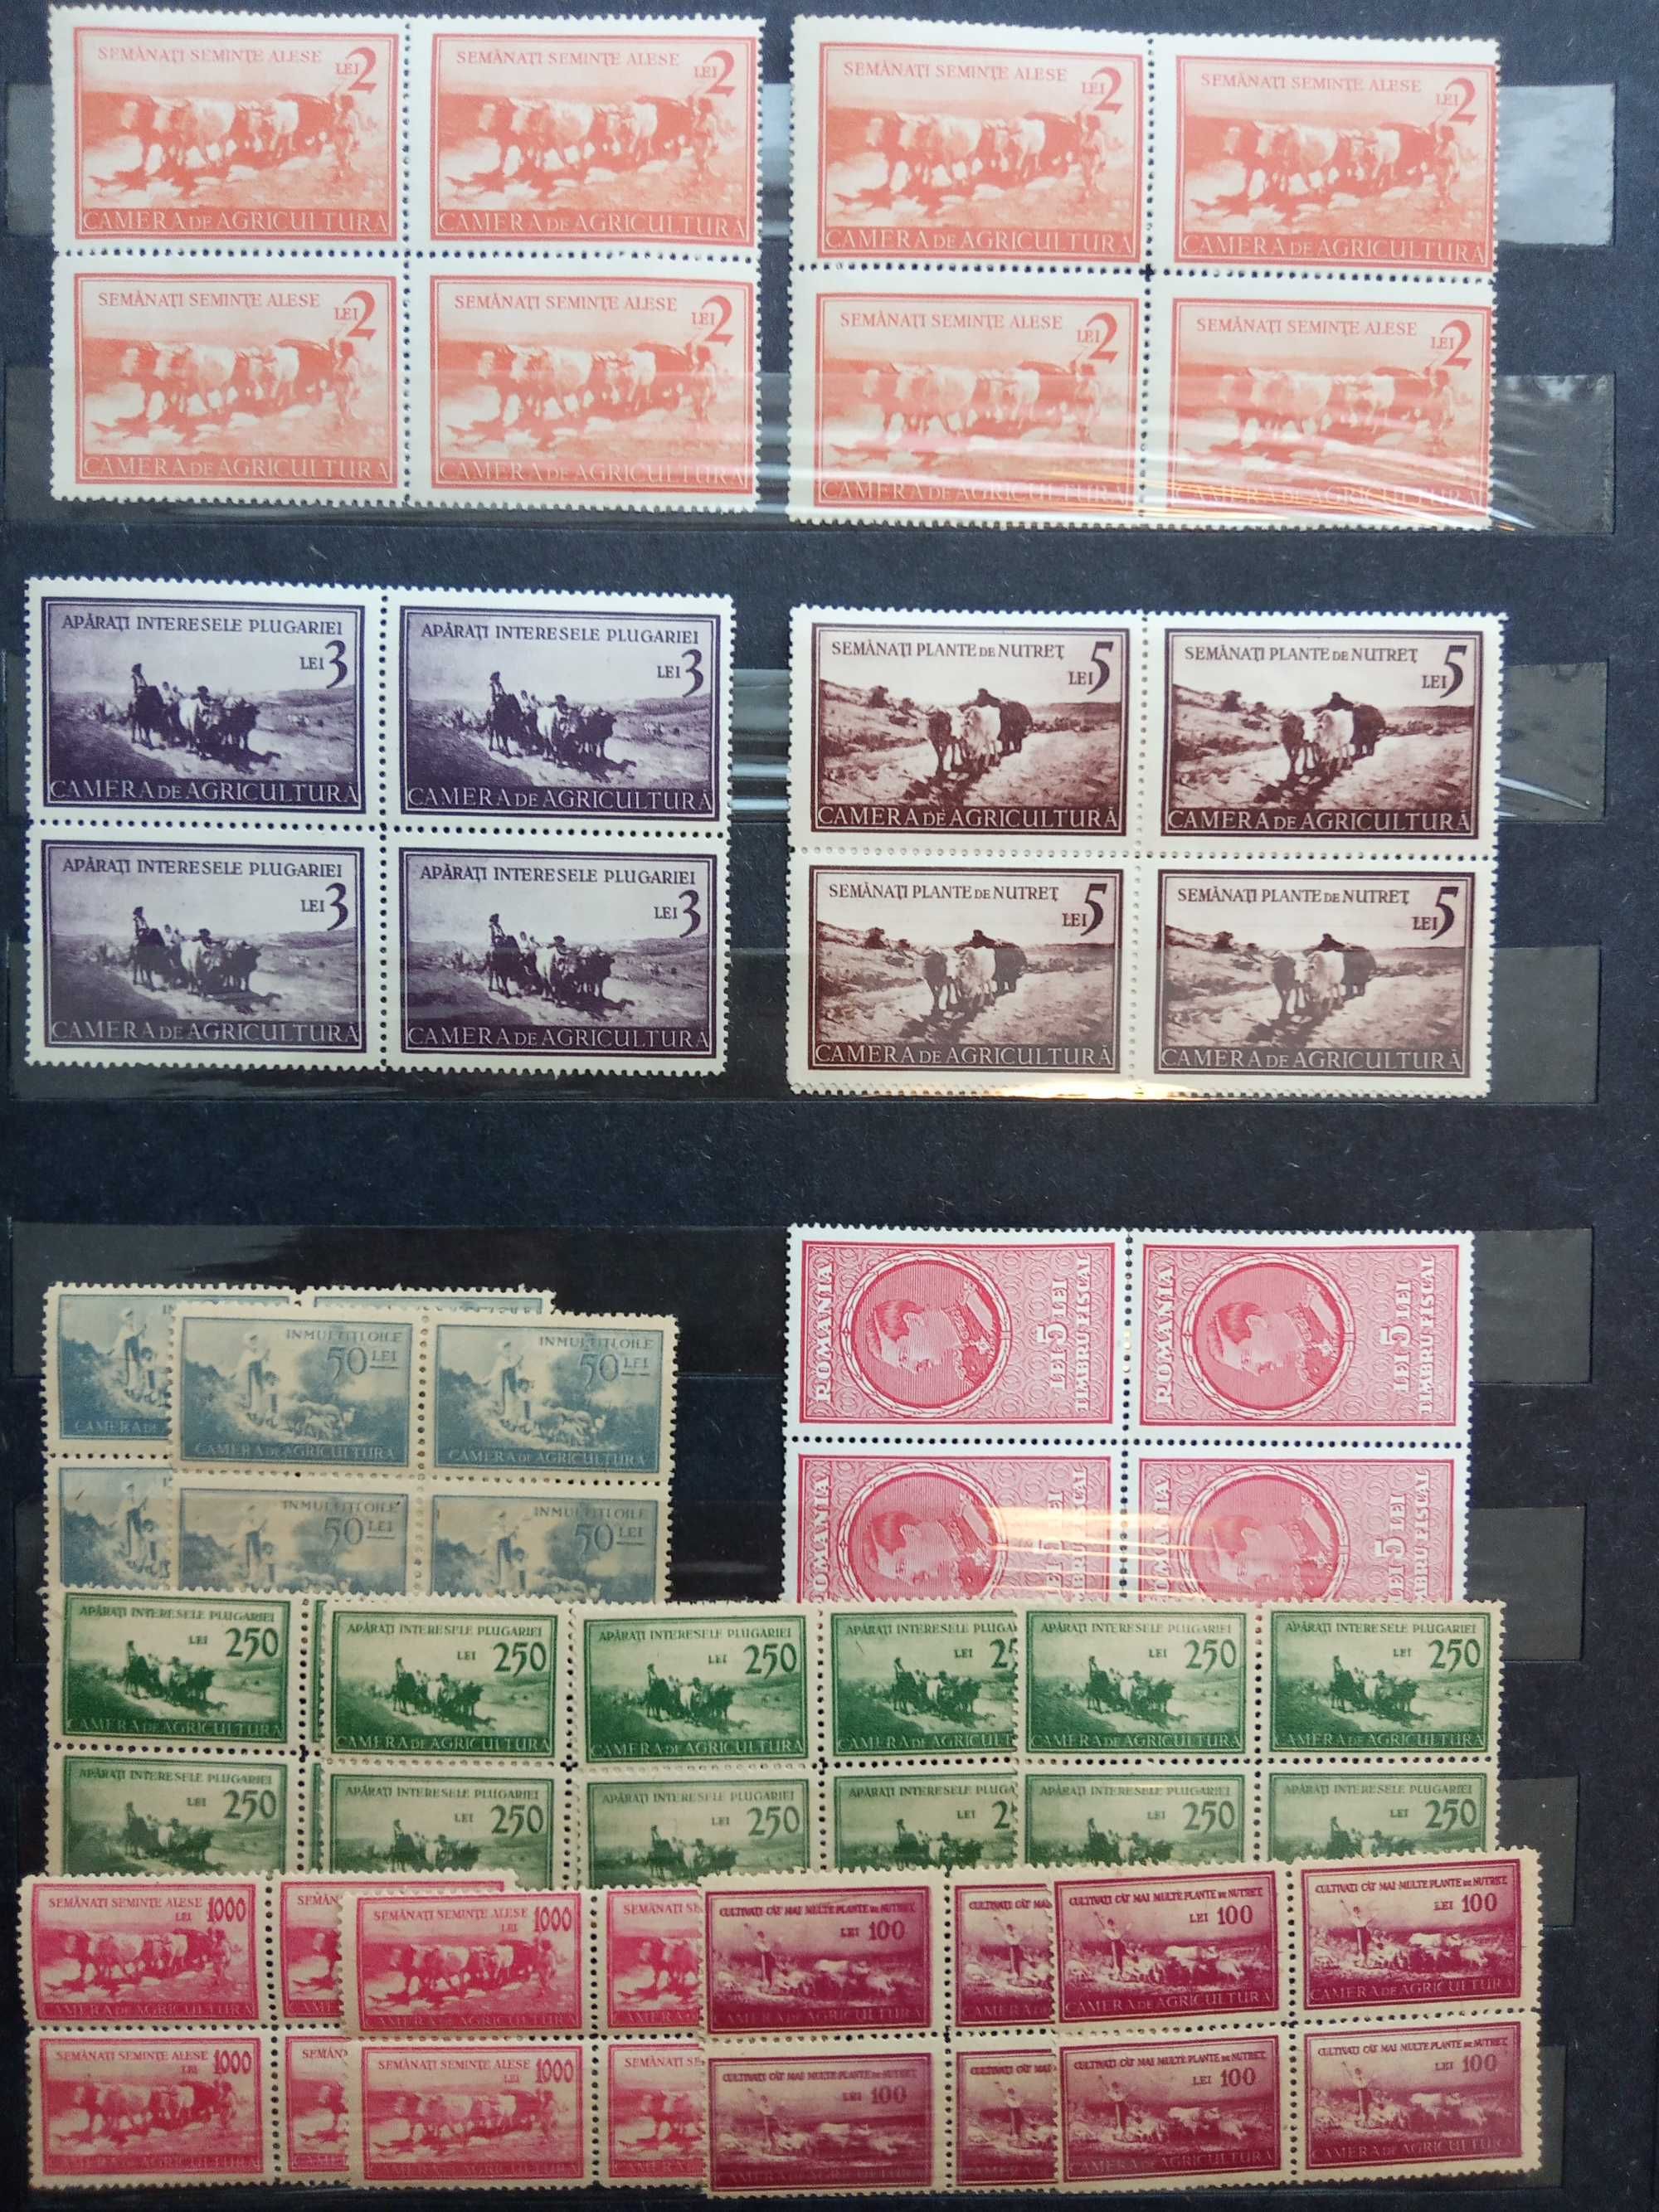 timbre 1903-1939, romanesti, postale si fiscale